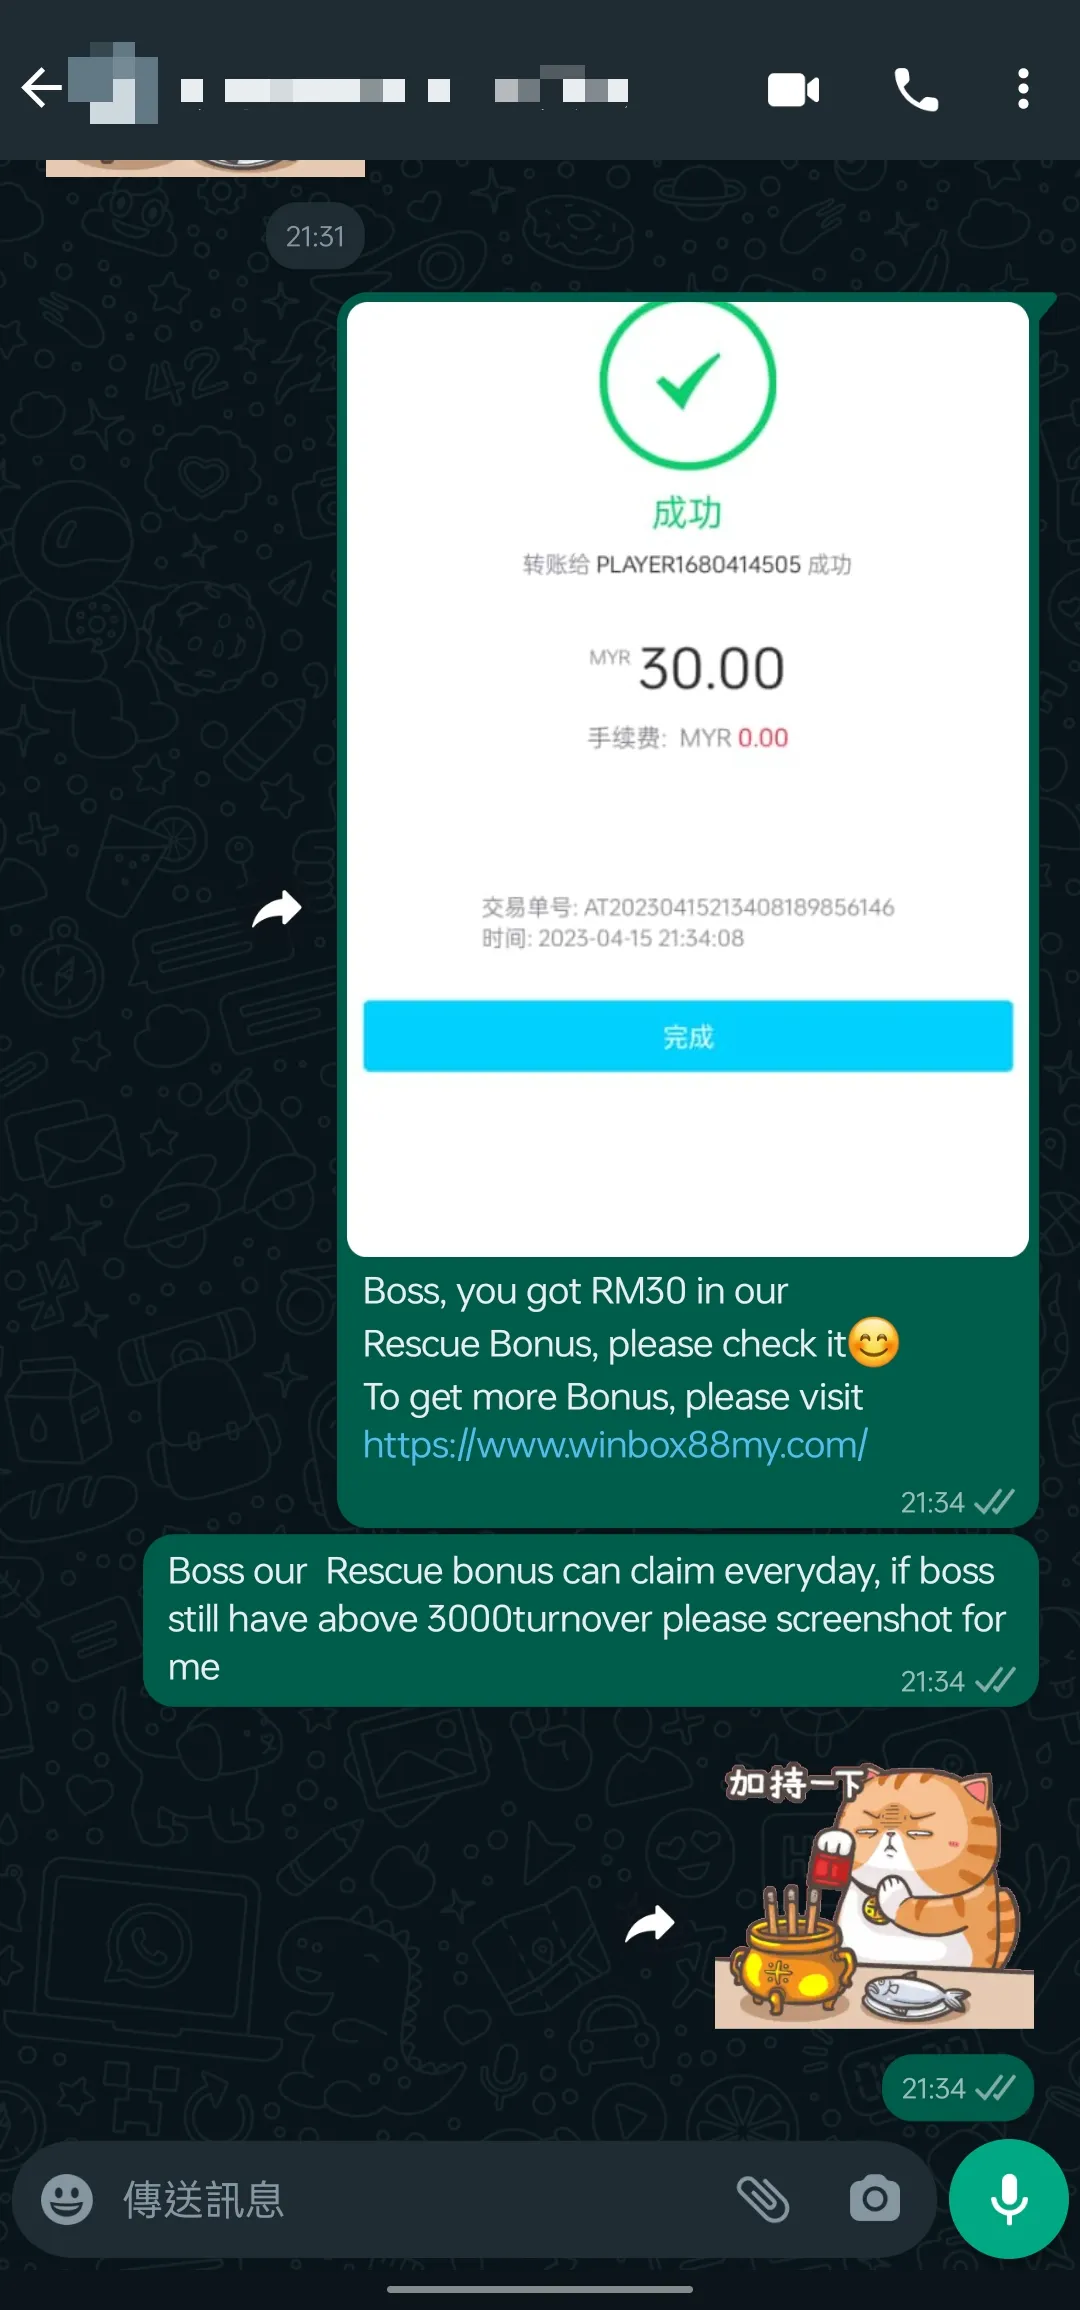 winbox rescue bonus past winner screenshot 14